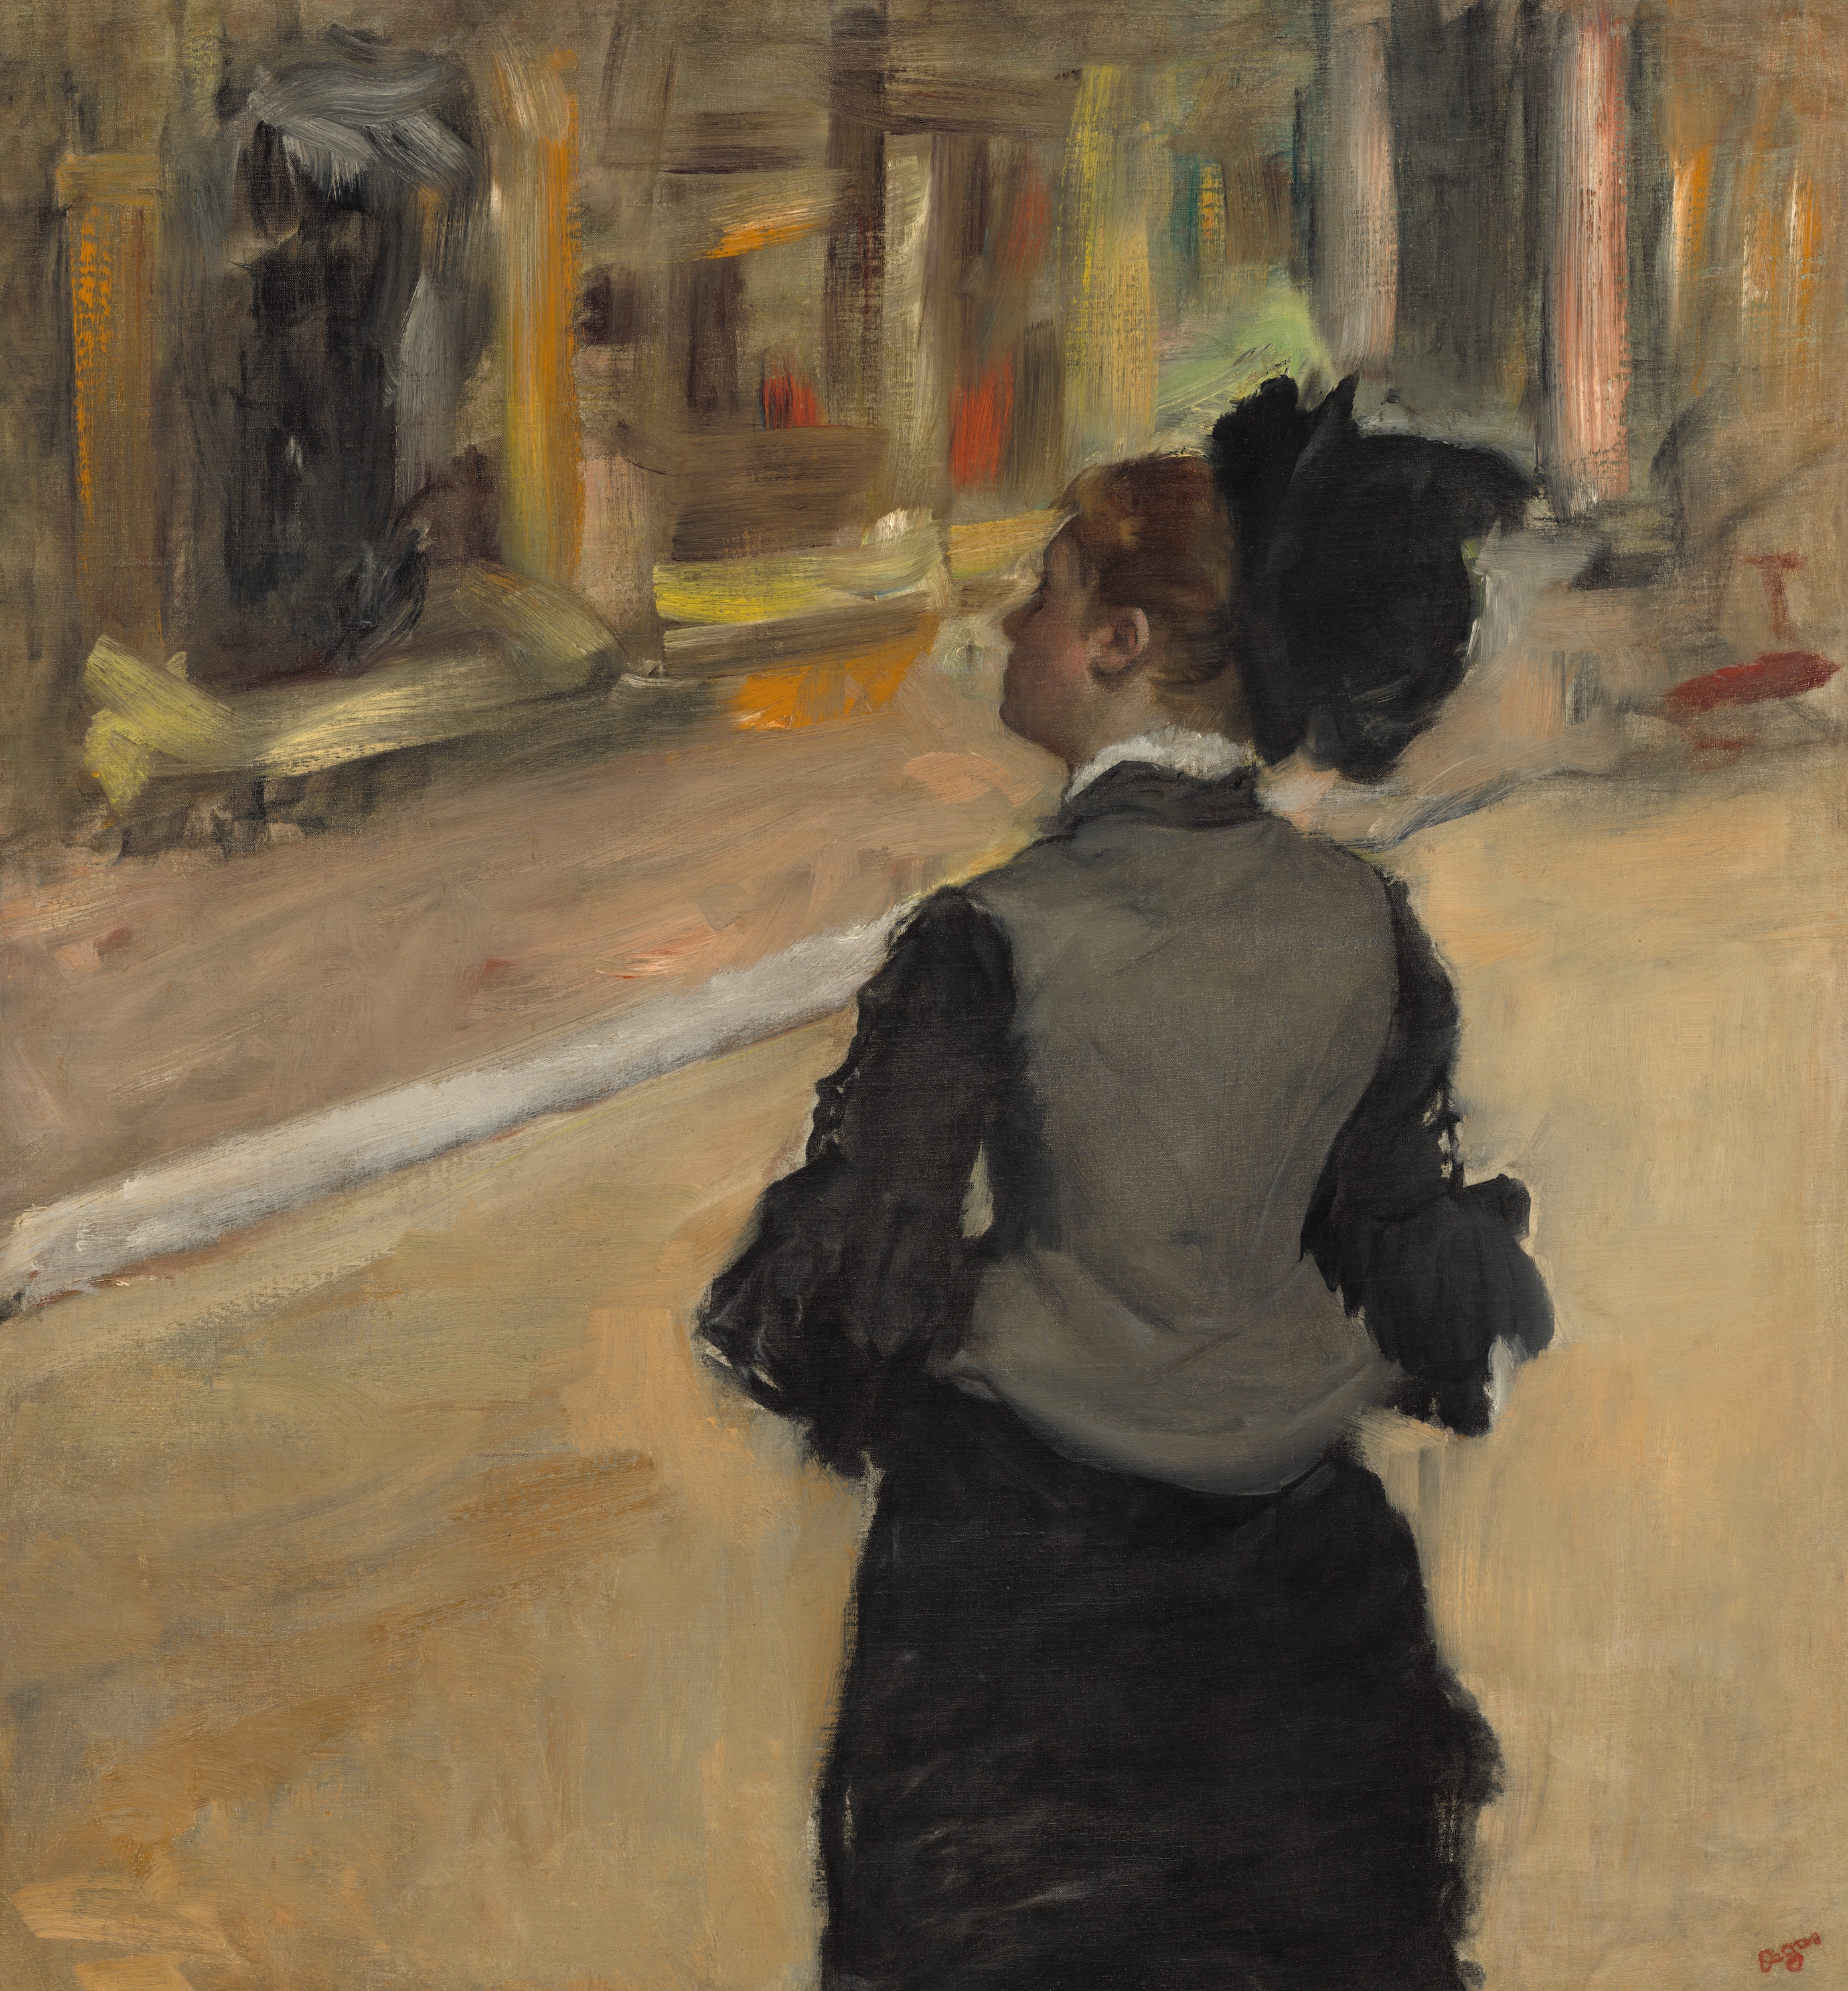 Frau von hinten gesehen (Besuch in einem Museum) by Edgar Degas - zwischen ca. 1879 und ca. 1885 - 81.3 × 75.6 cm National Gallery of Art